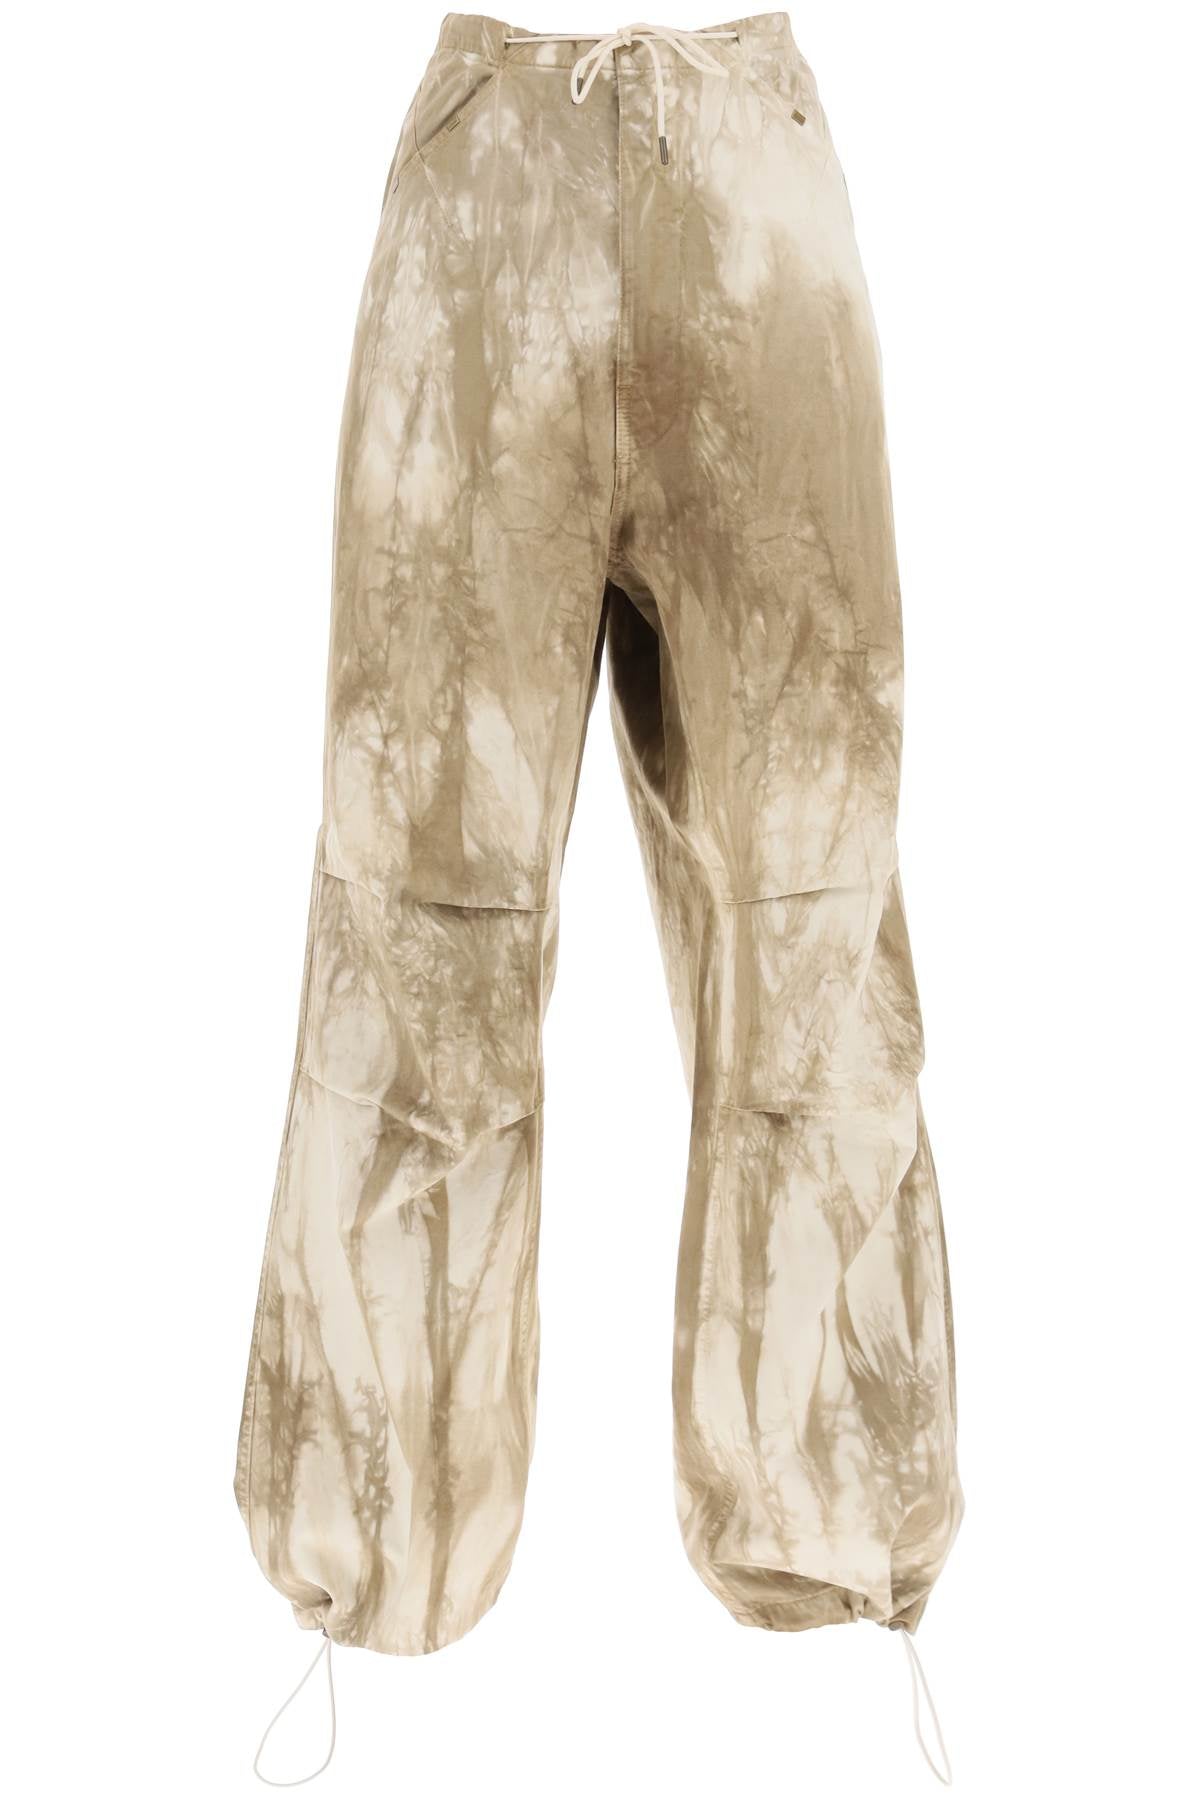 Darkpark daisy tie-dye baggy pants WTR02 FAP01W2 BEIGE OFF WHITE